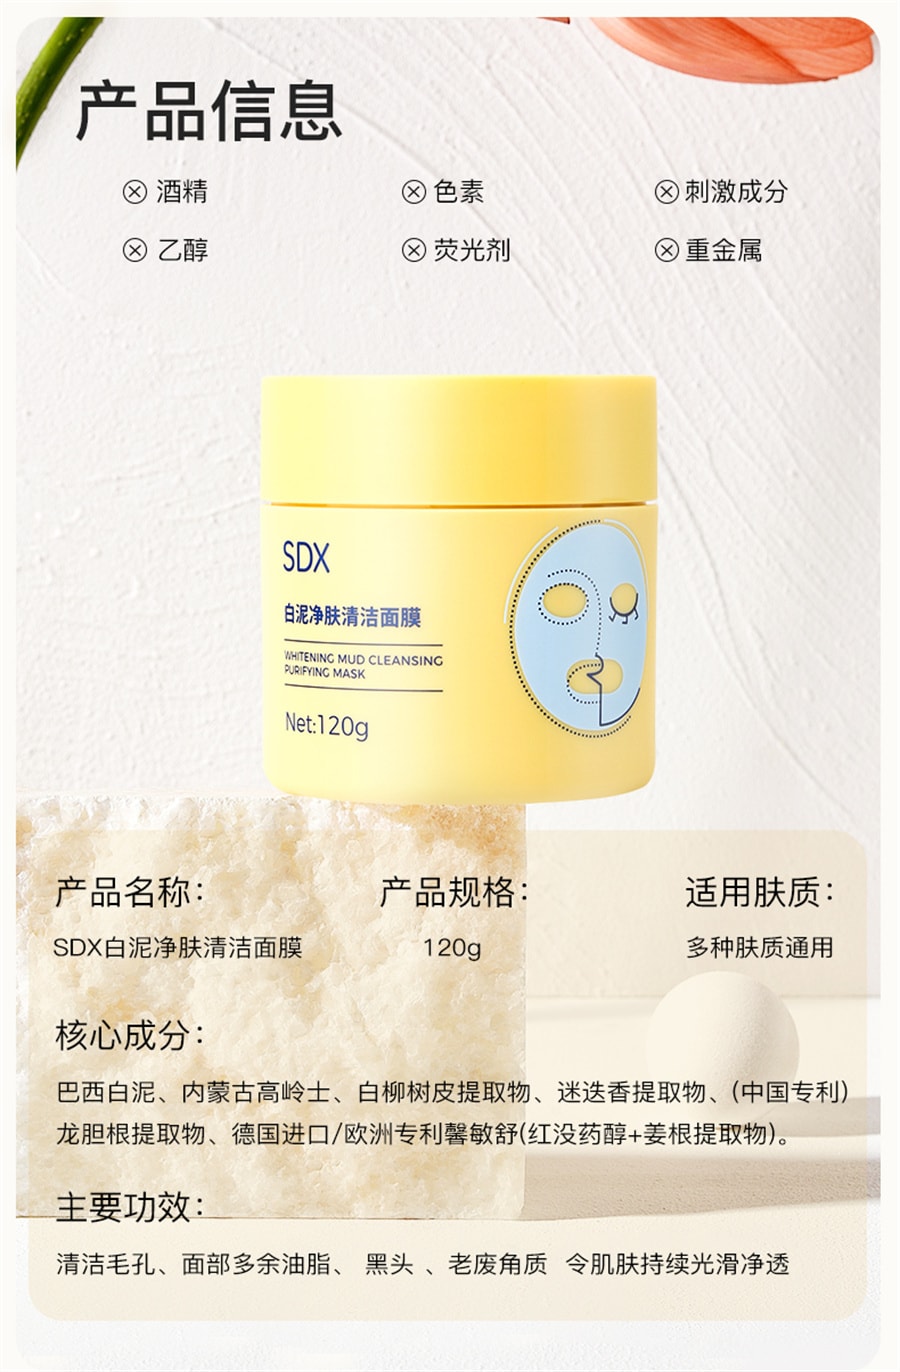 【中國直效郵件】SDX 清潔泥膜深層毛孔清潔清黑頭粉刺收緊毛孔面膜 120g